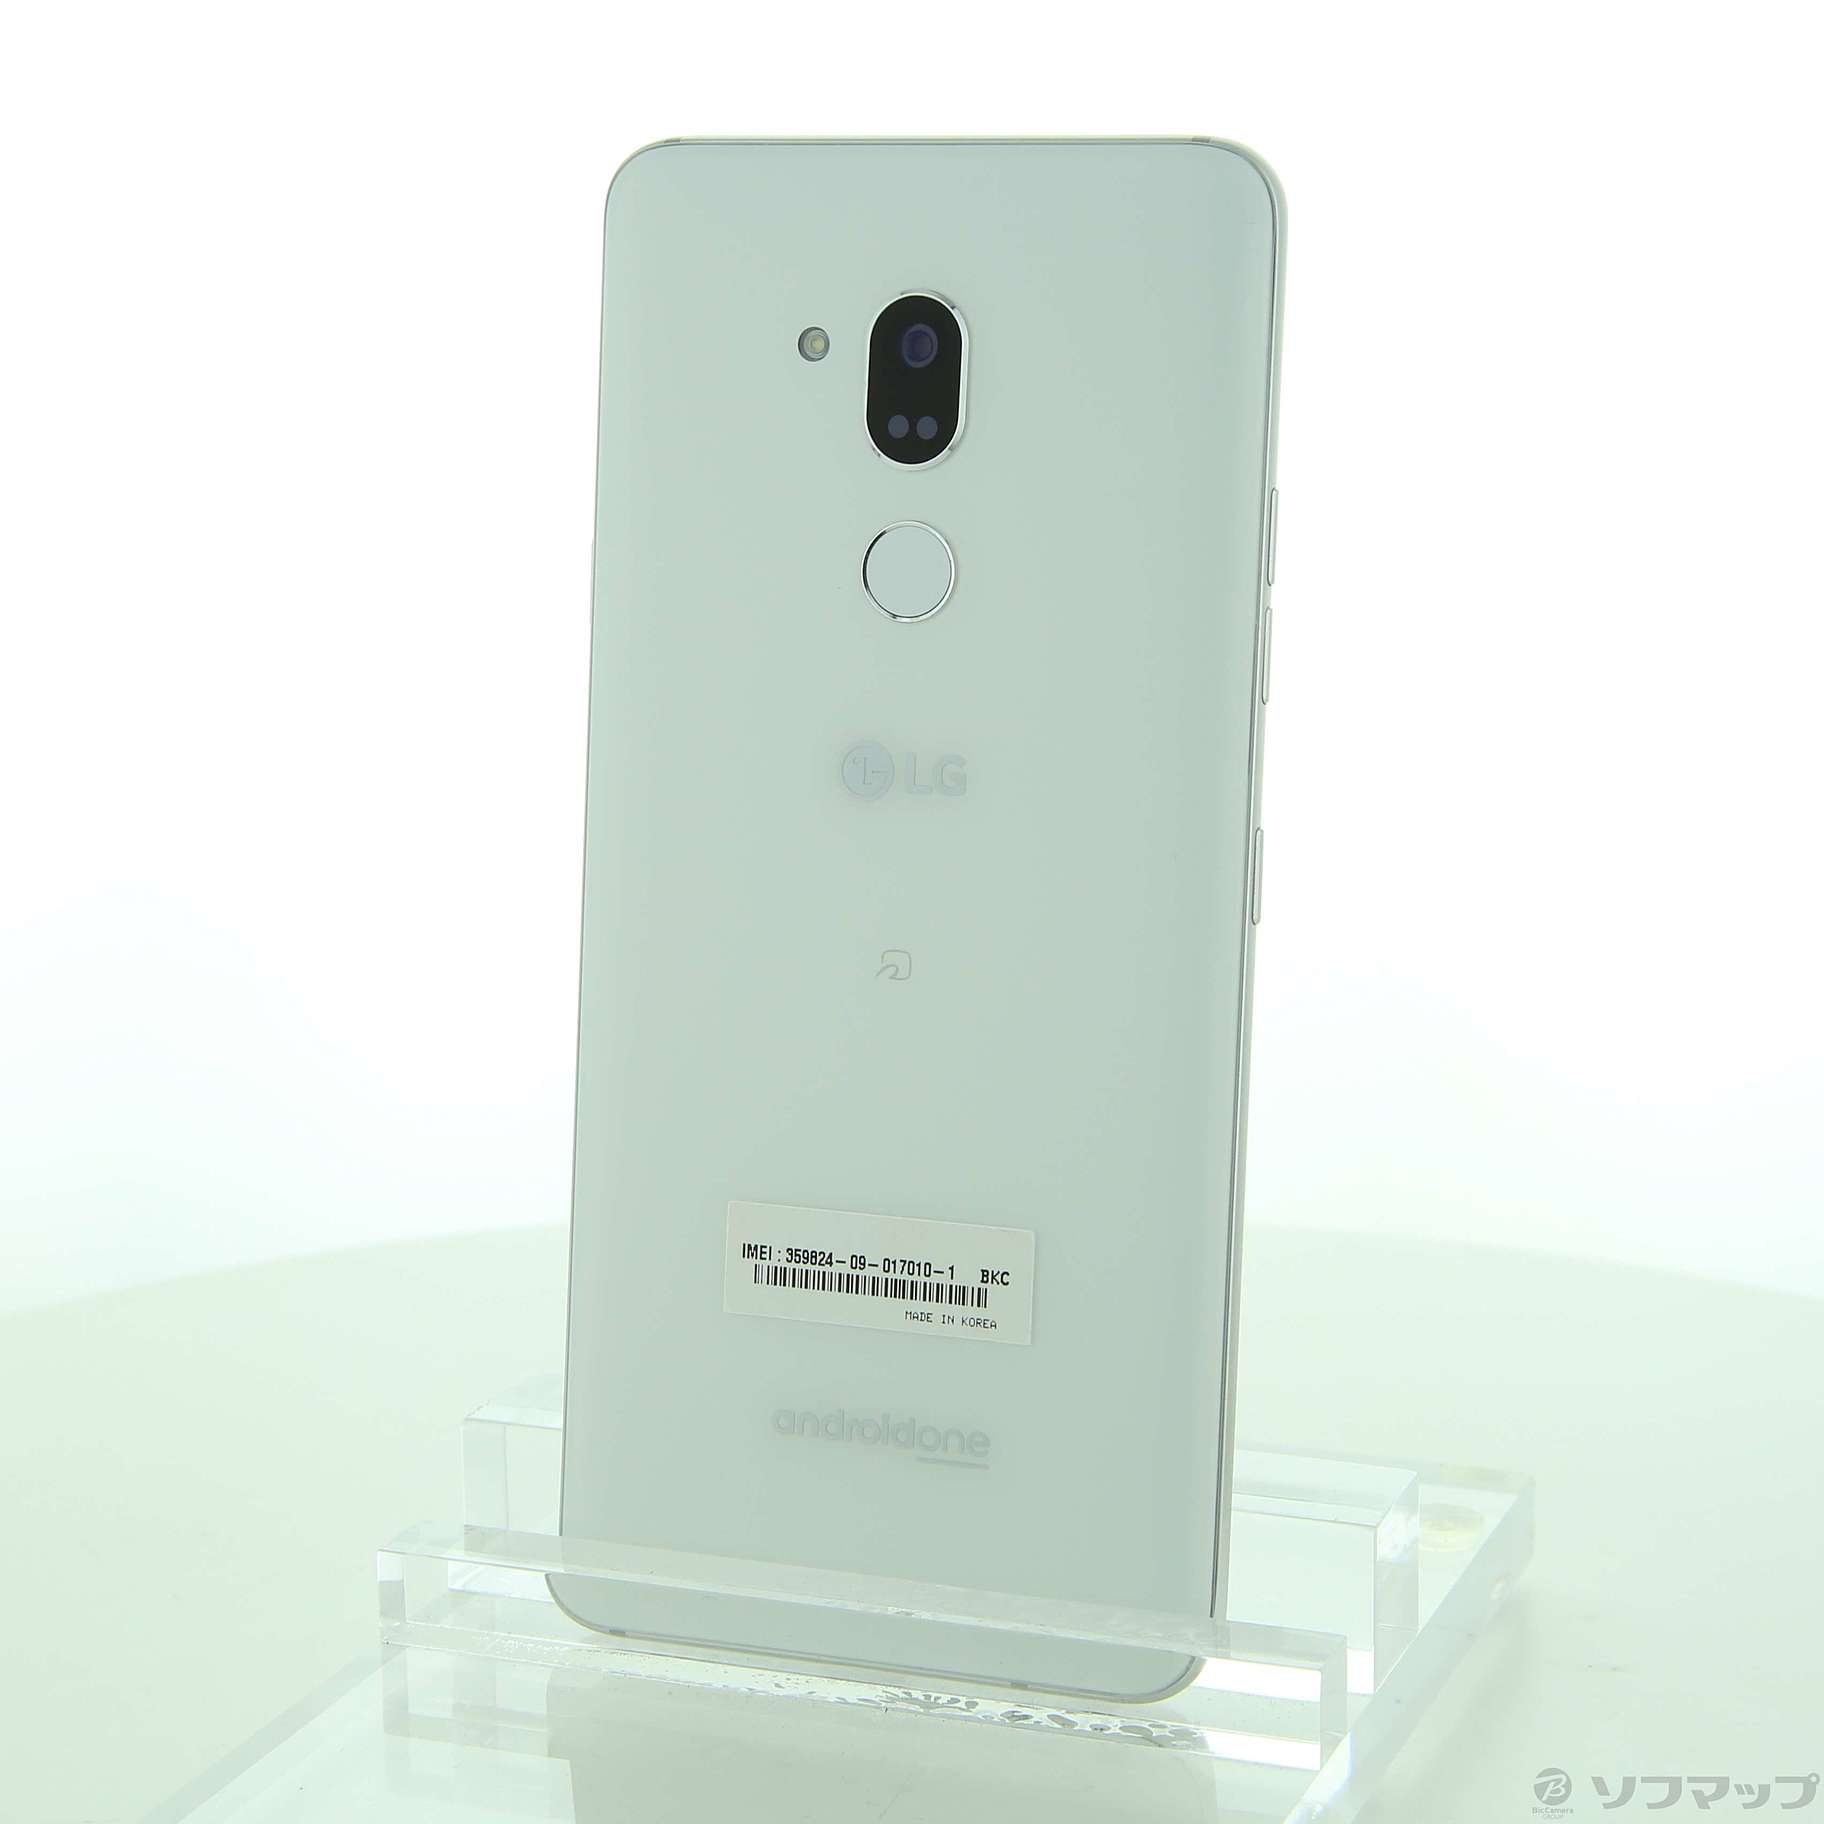 中古】Android One X5 32GB ミスティックホワイト LGSAE2 Y!mobile ...